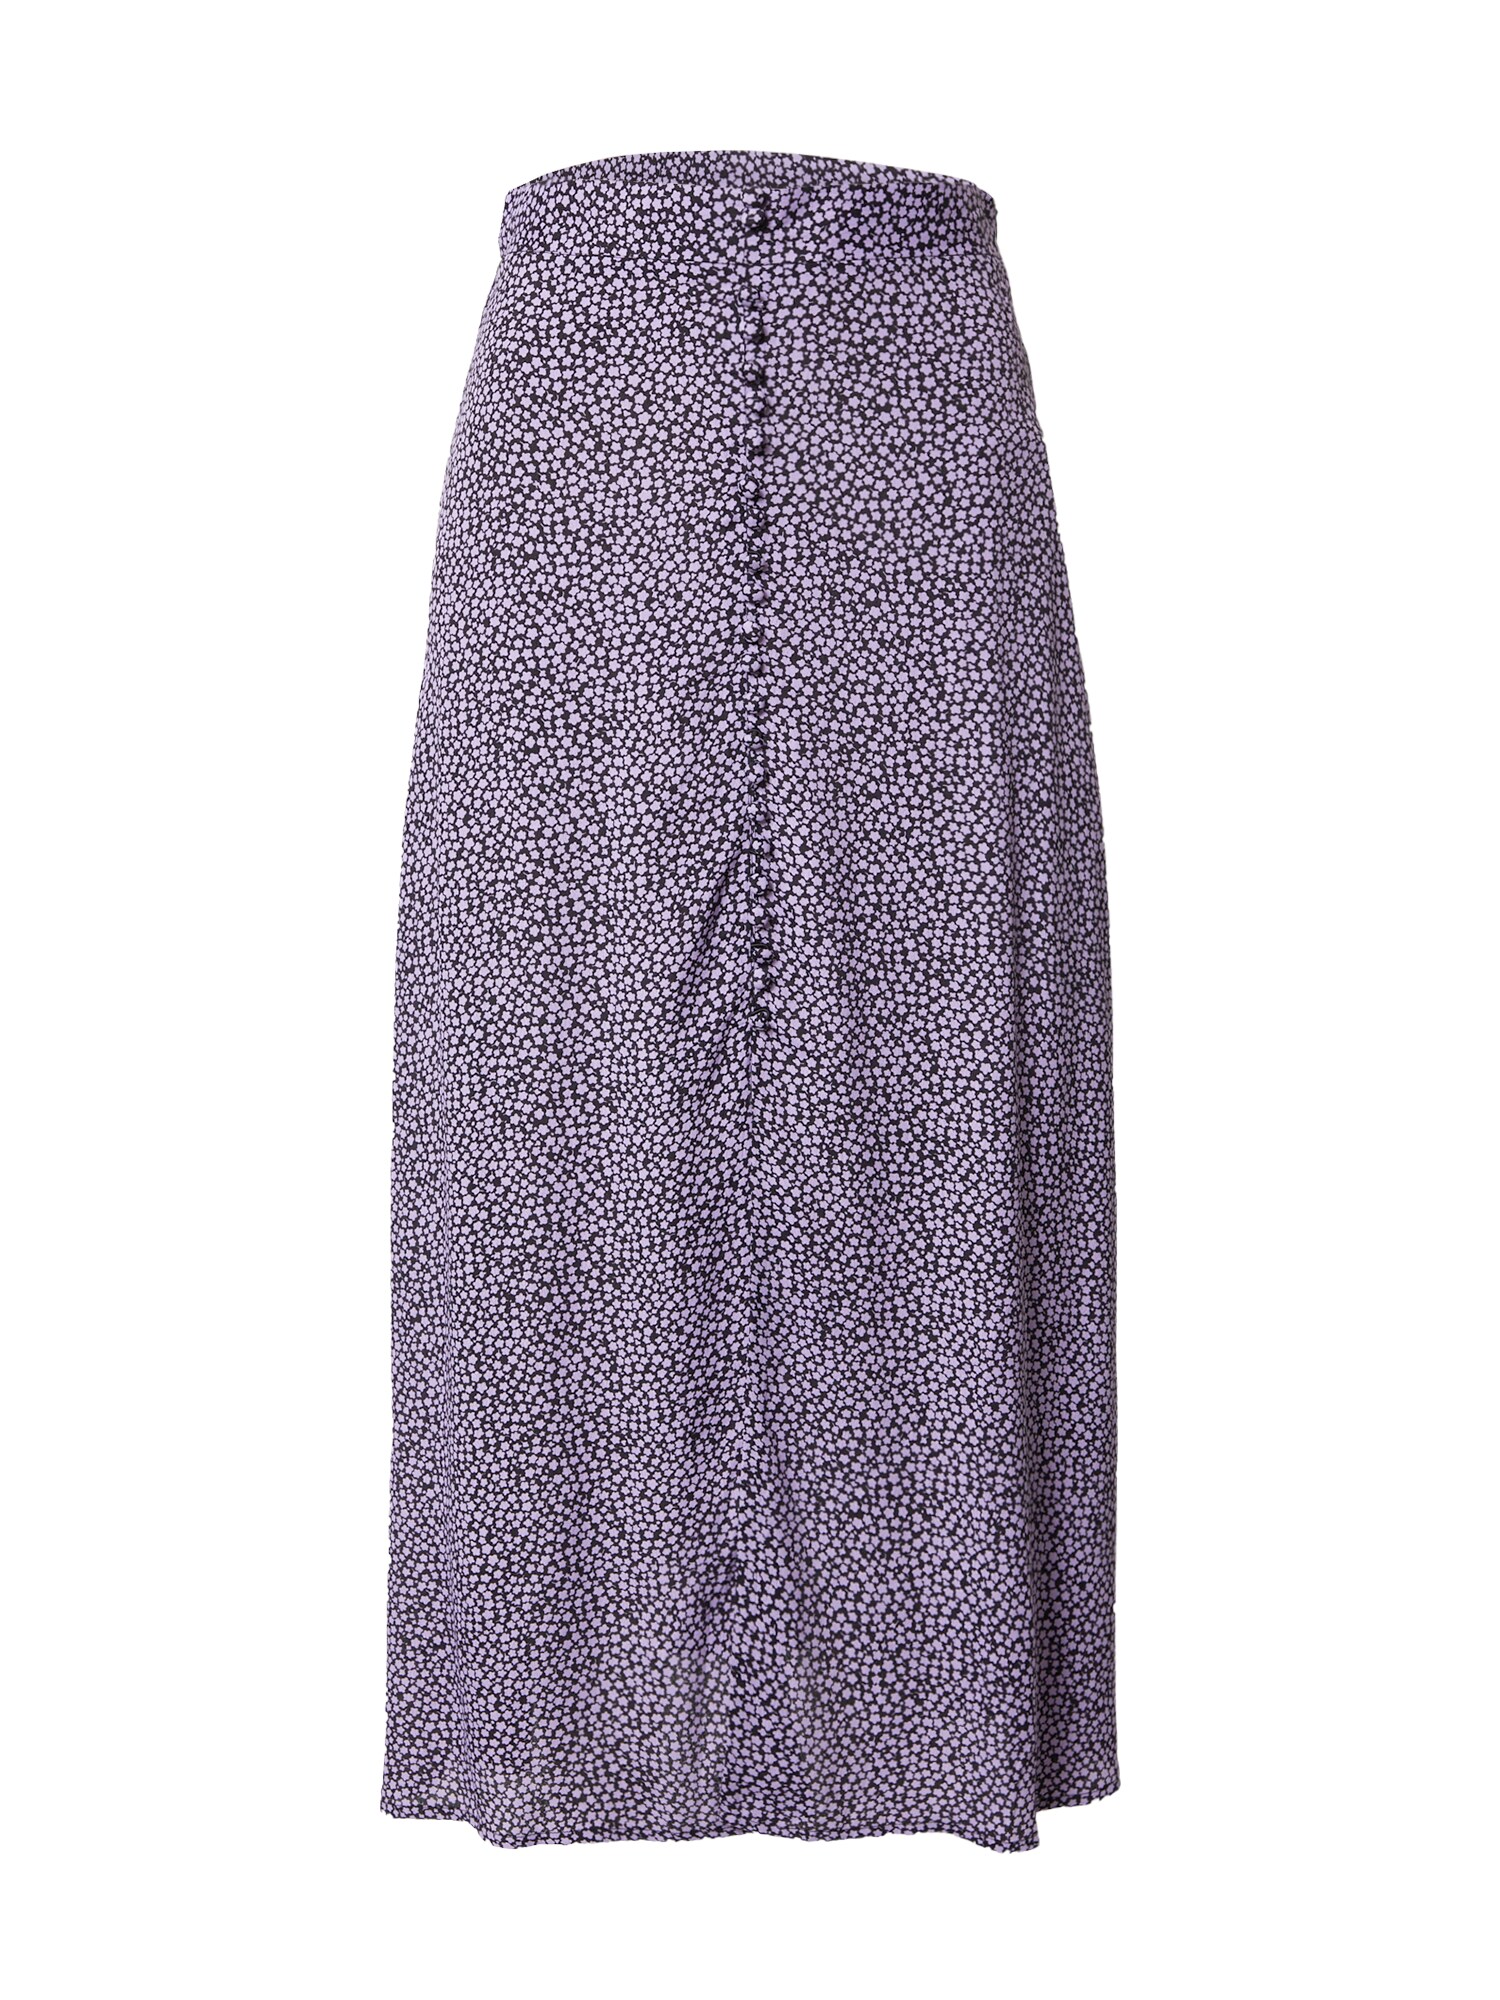 Bizance Paris Sijonas 'CLOTILDE' purpurinė / juoda